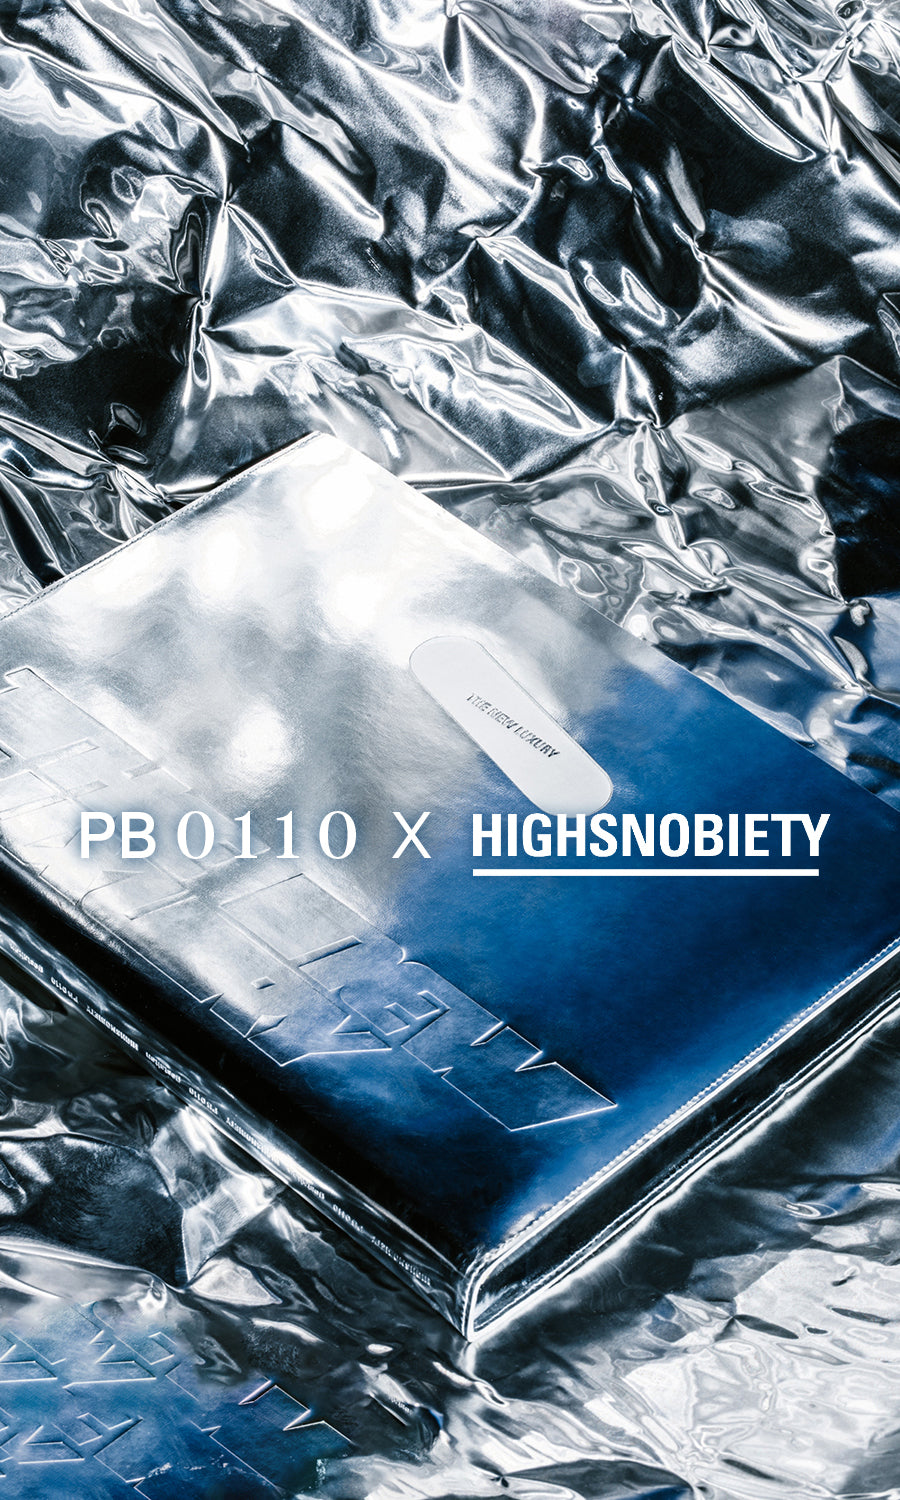 PB0110 X HIGHSNOBIETY